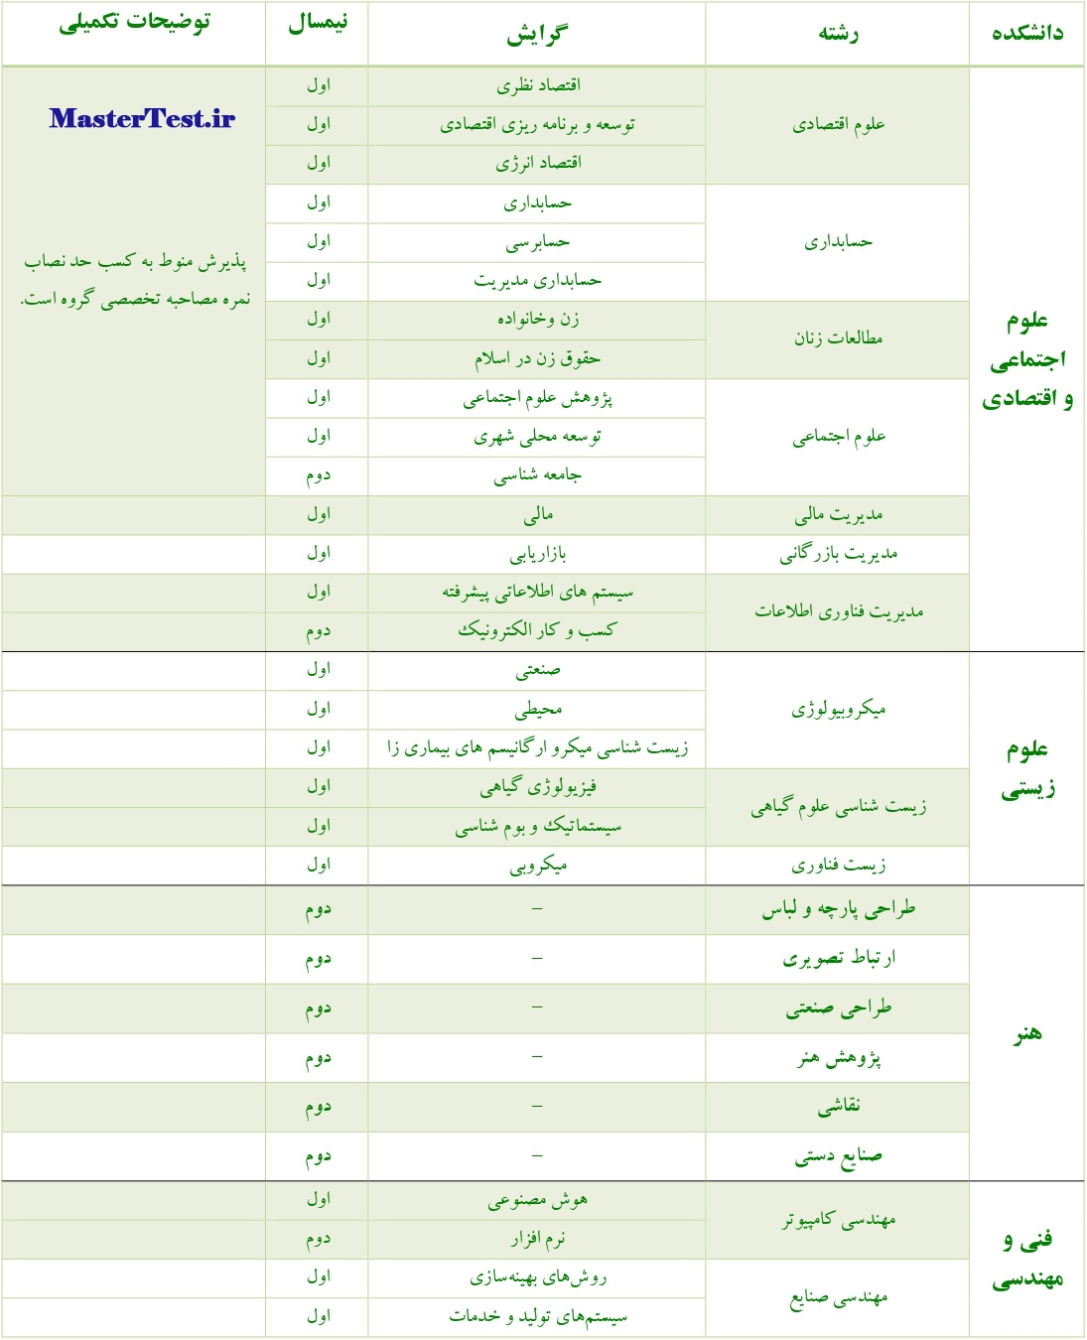 رشته های بدون آزمون کارشناسی ارشد دانشگاه الزهرا ص1